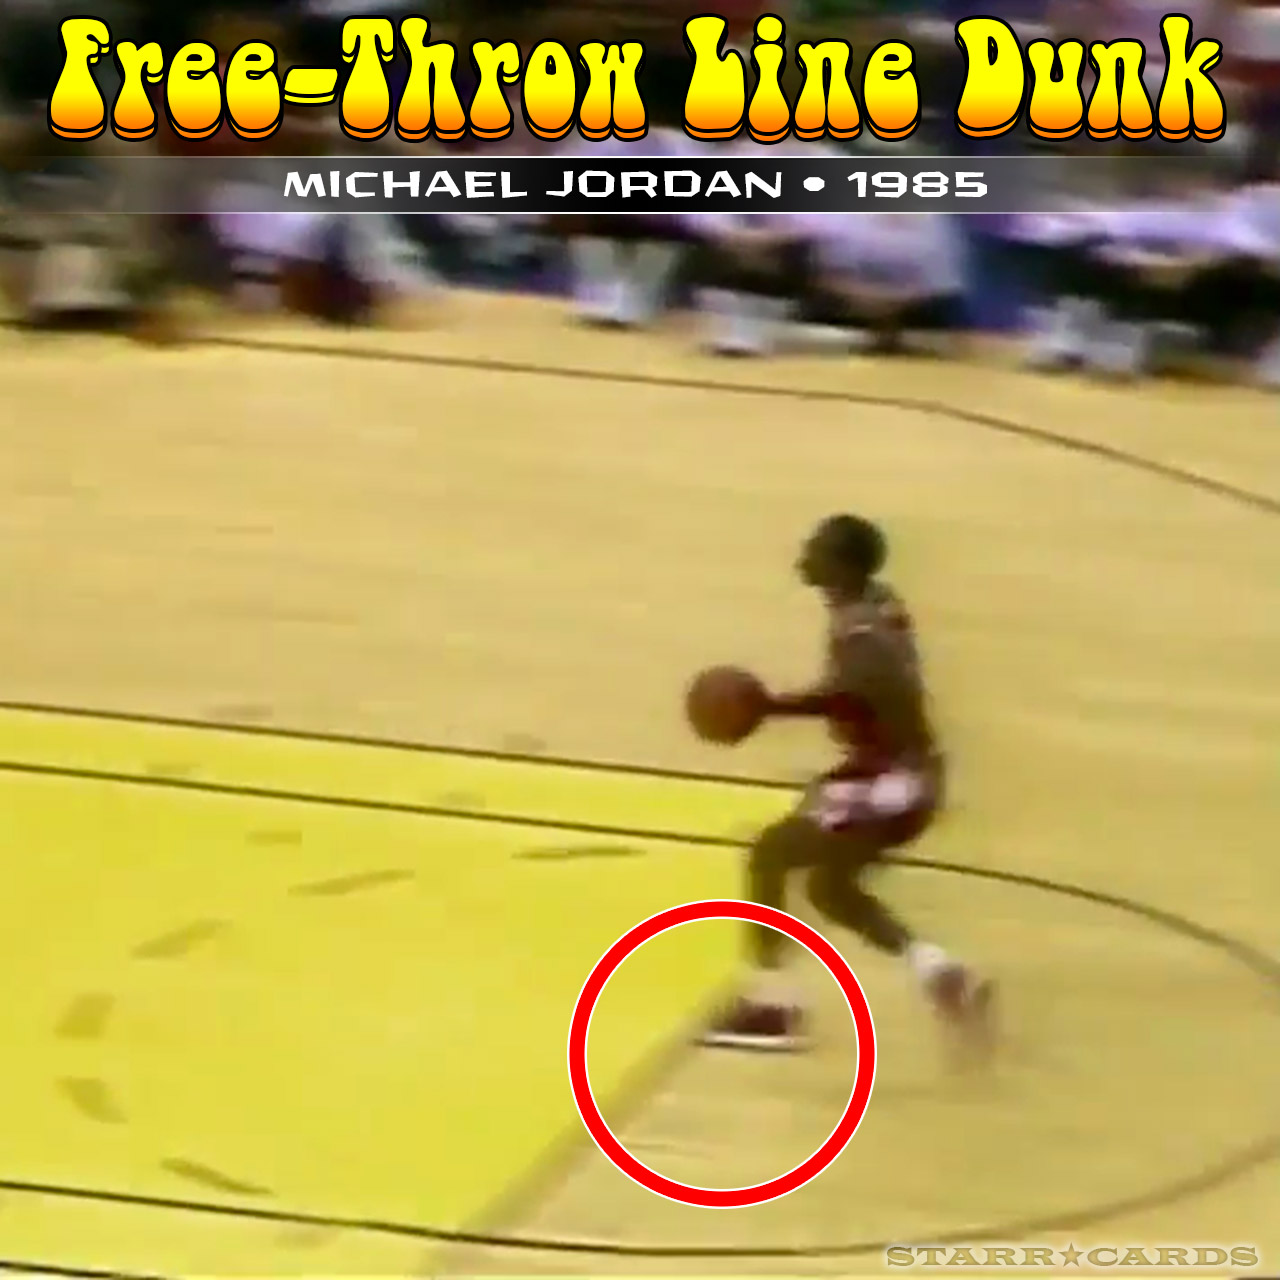 jordan free throw dunk